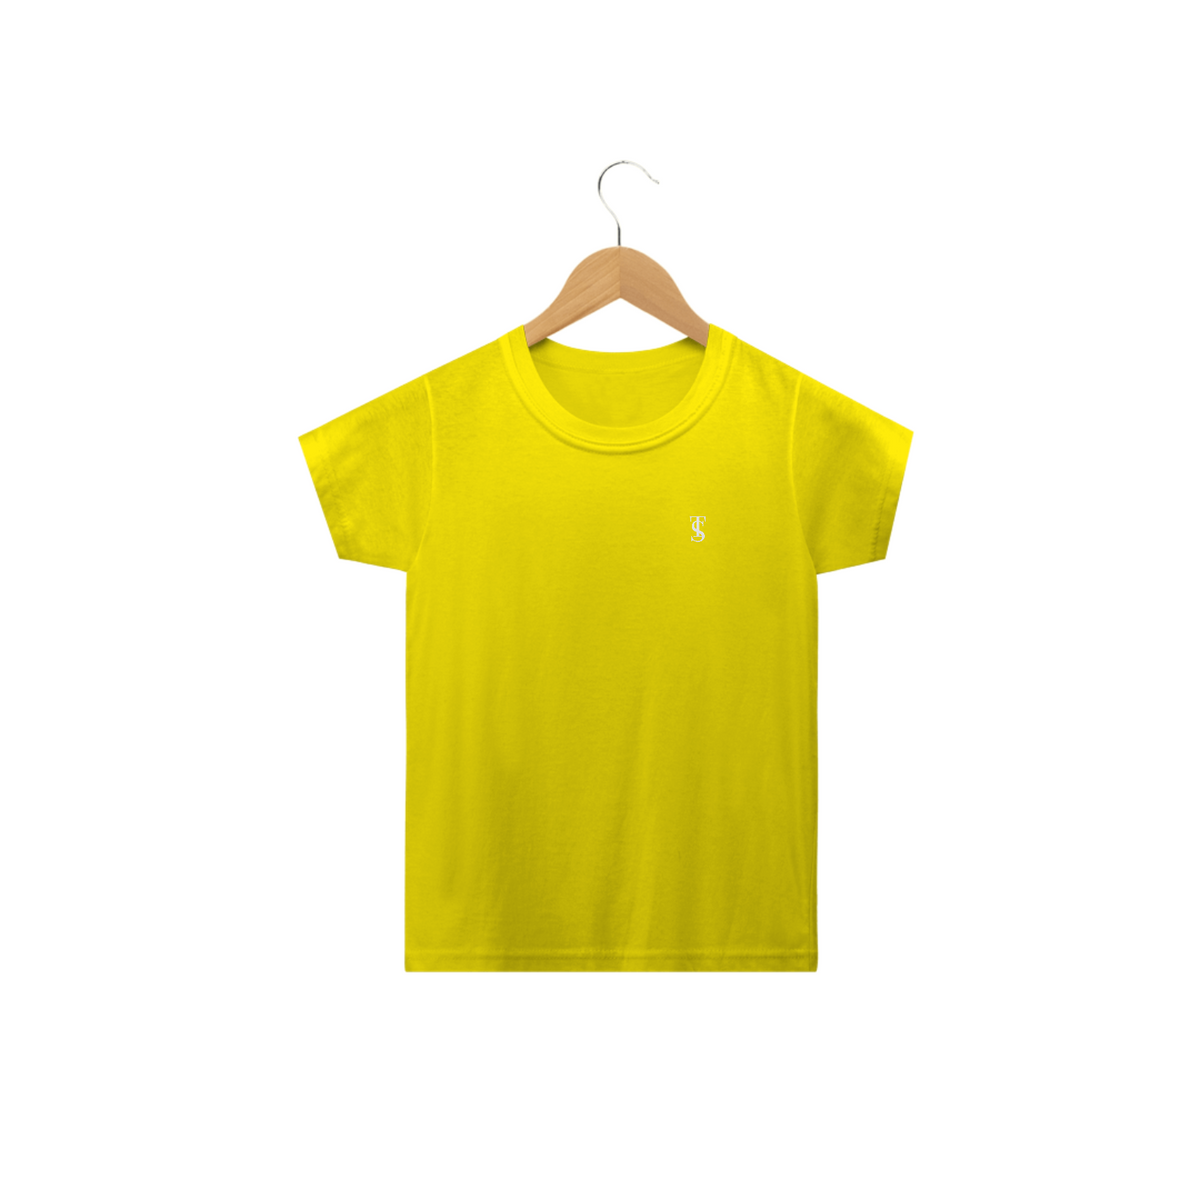 Nome do produto: Camiseta Básica Infantil Amarela